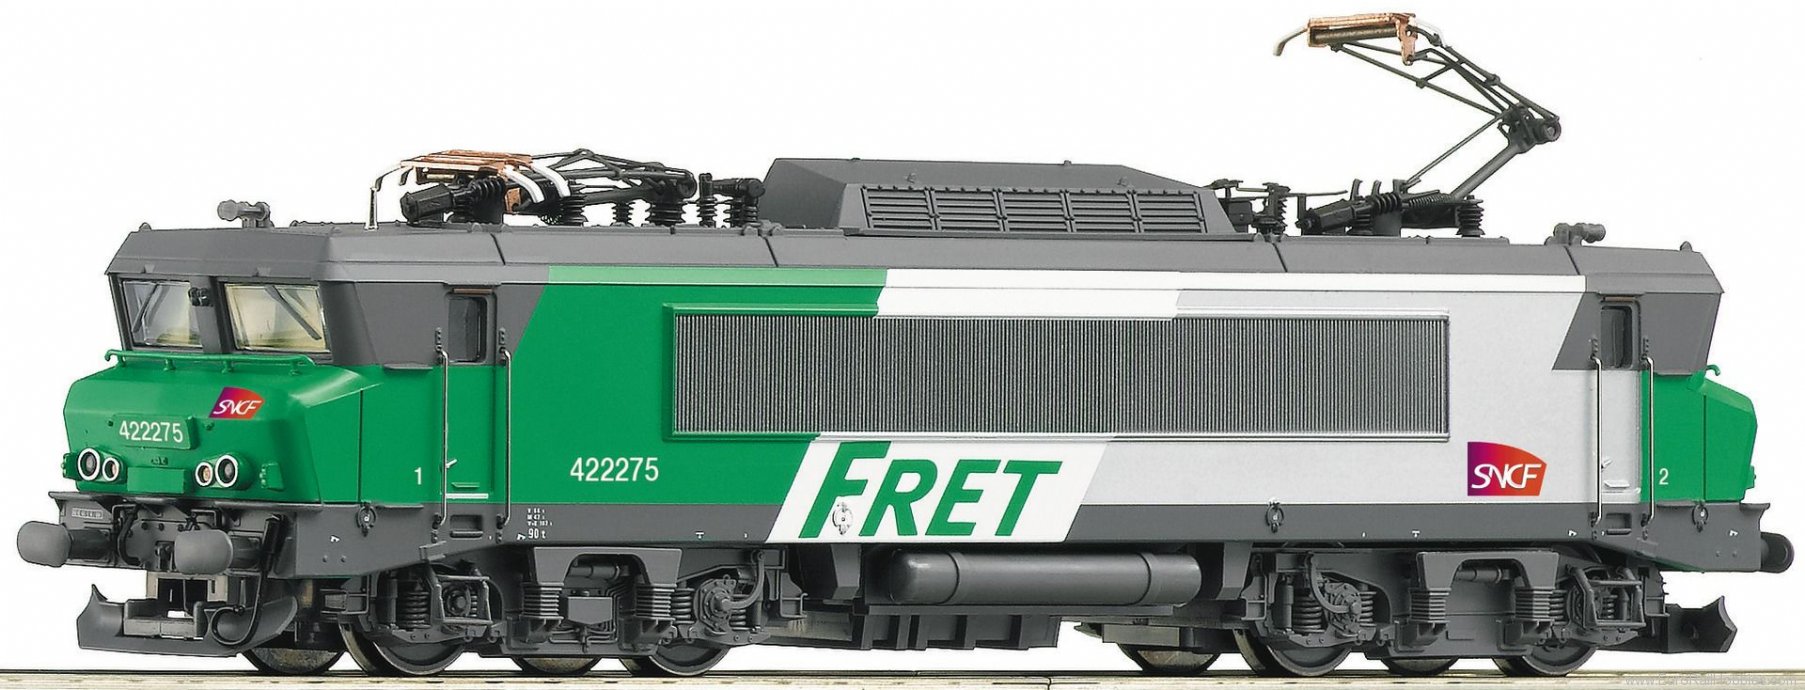 Locomotive électrique‚ BB 422275‚ SNCF‚ livrée frêt ‚ logo Carmillon‚ interface digitale